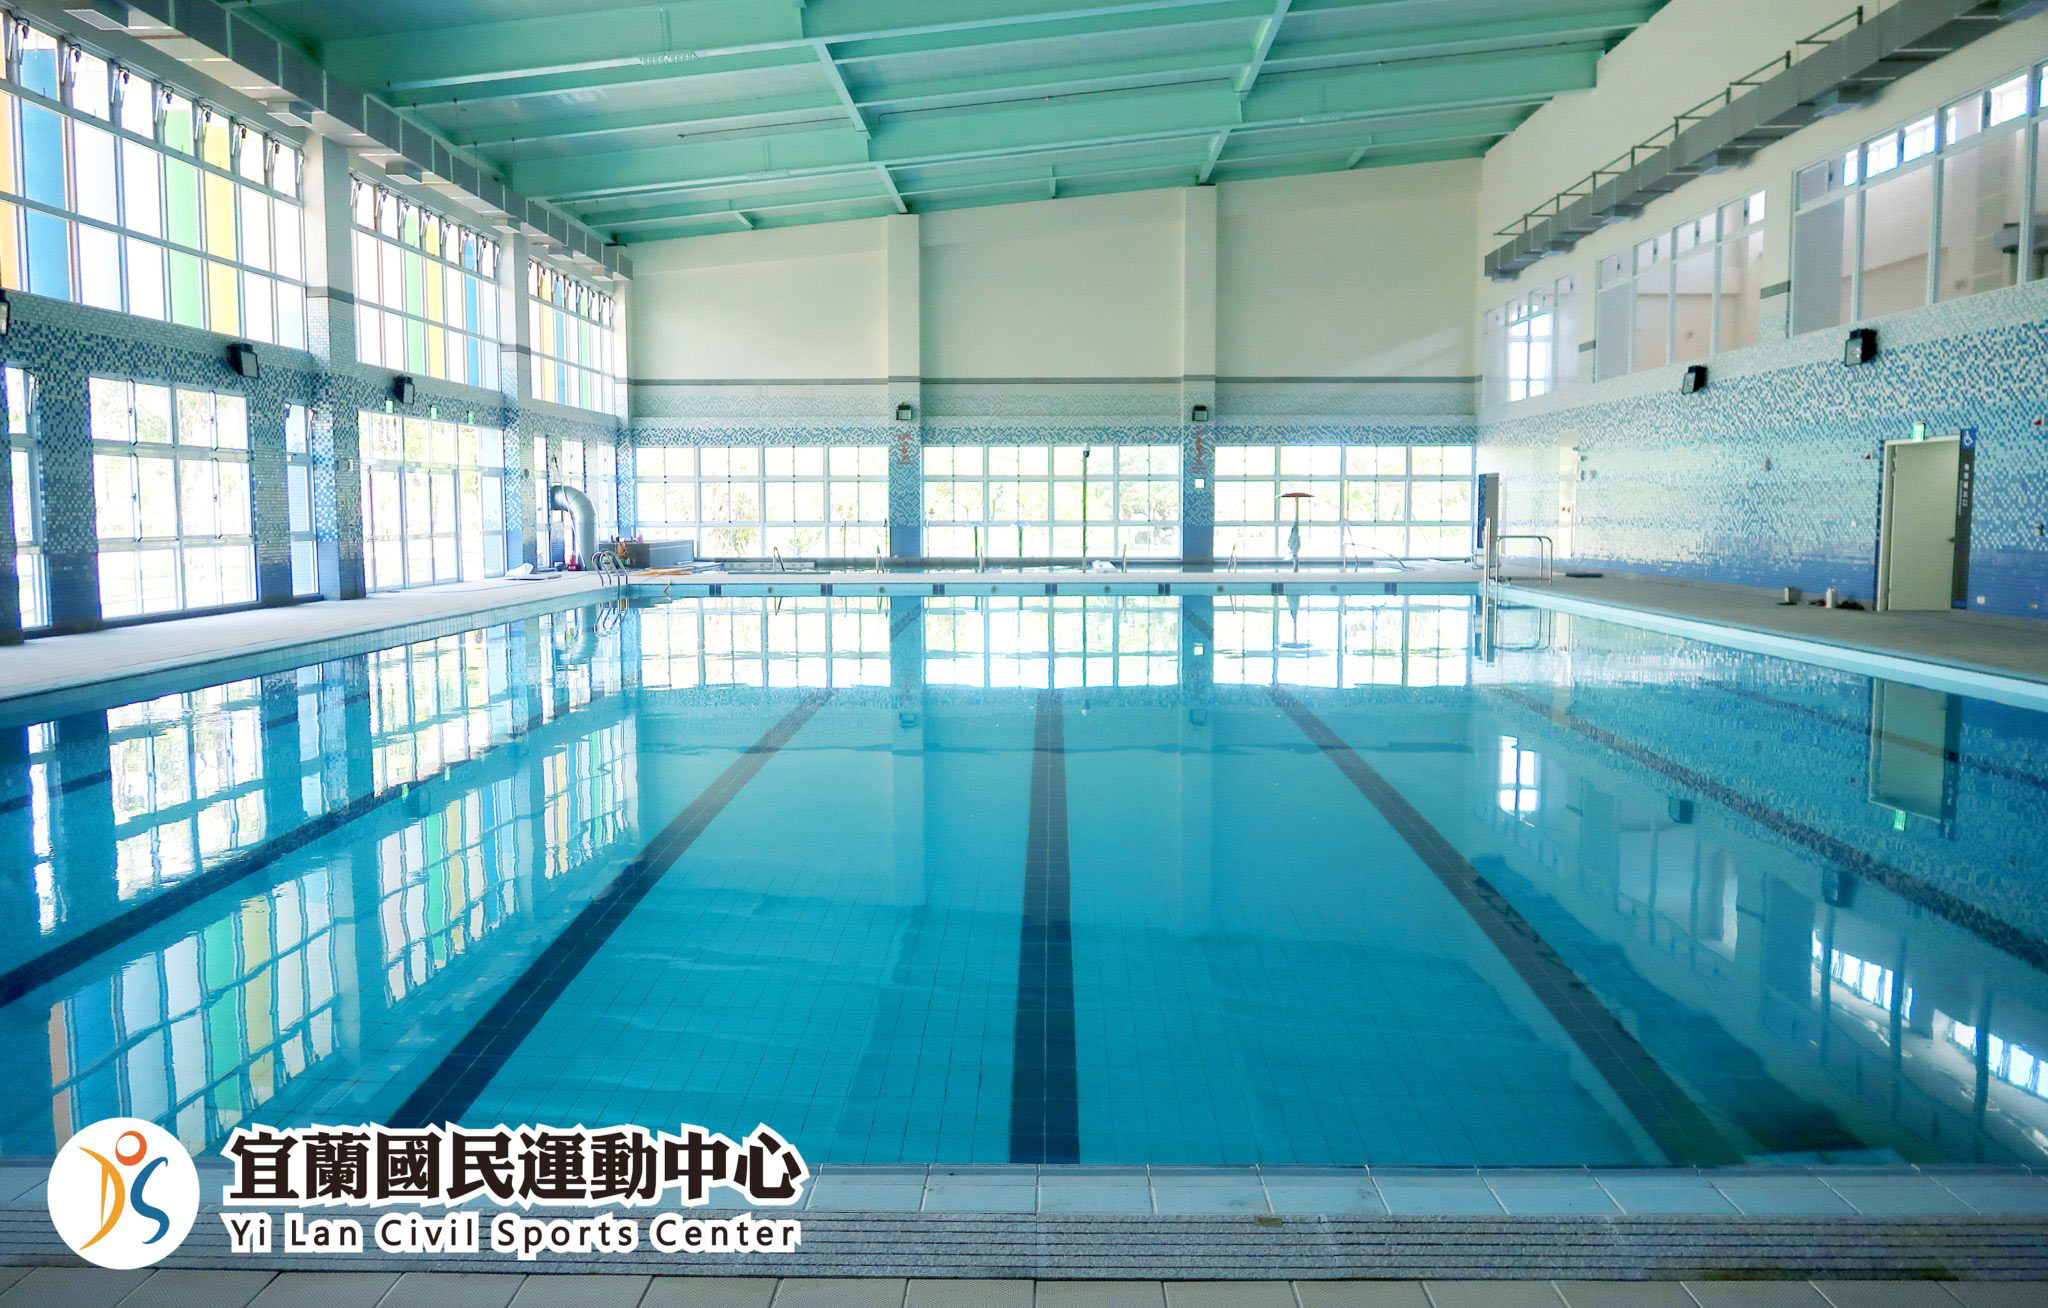 室內溫水游泳池-7道25M標準泳道(jpg)